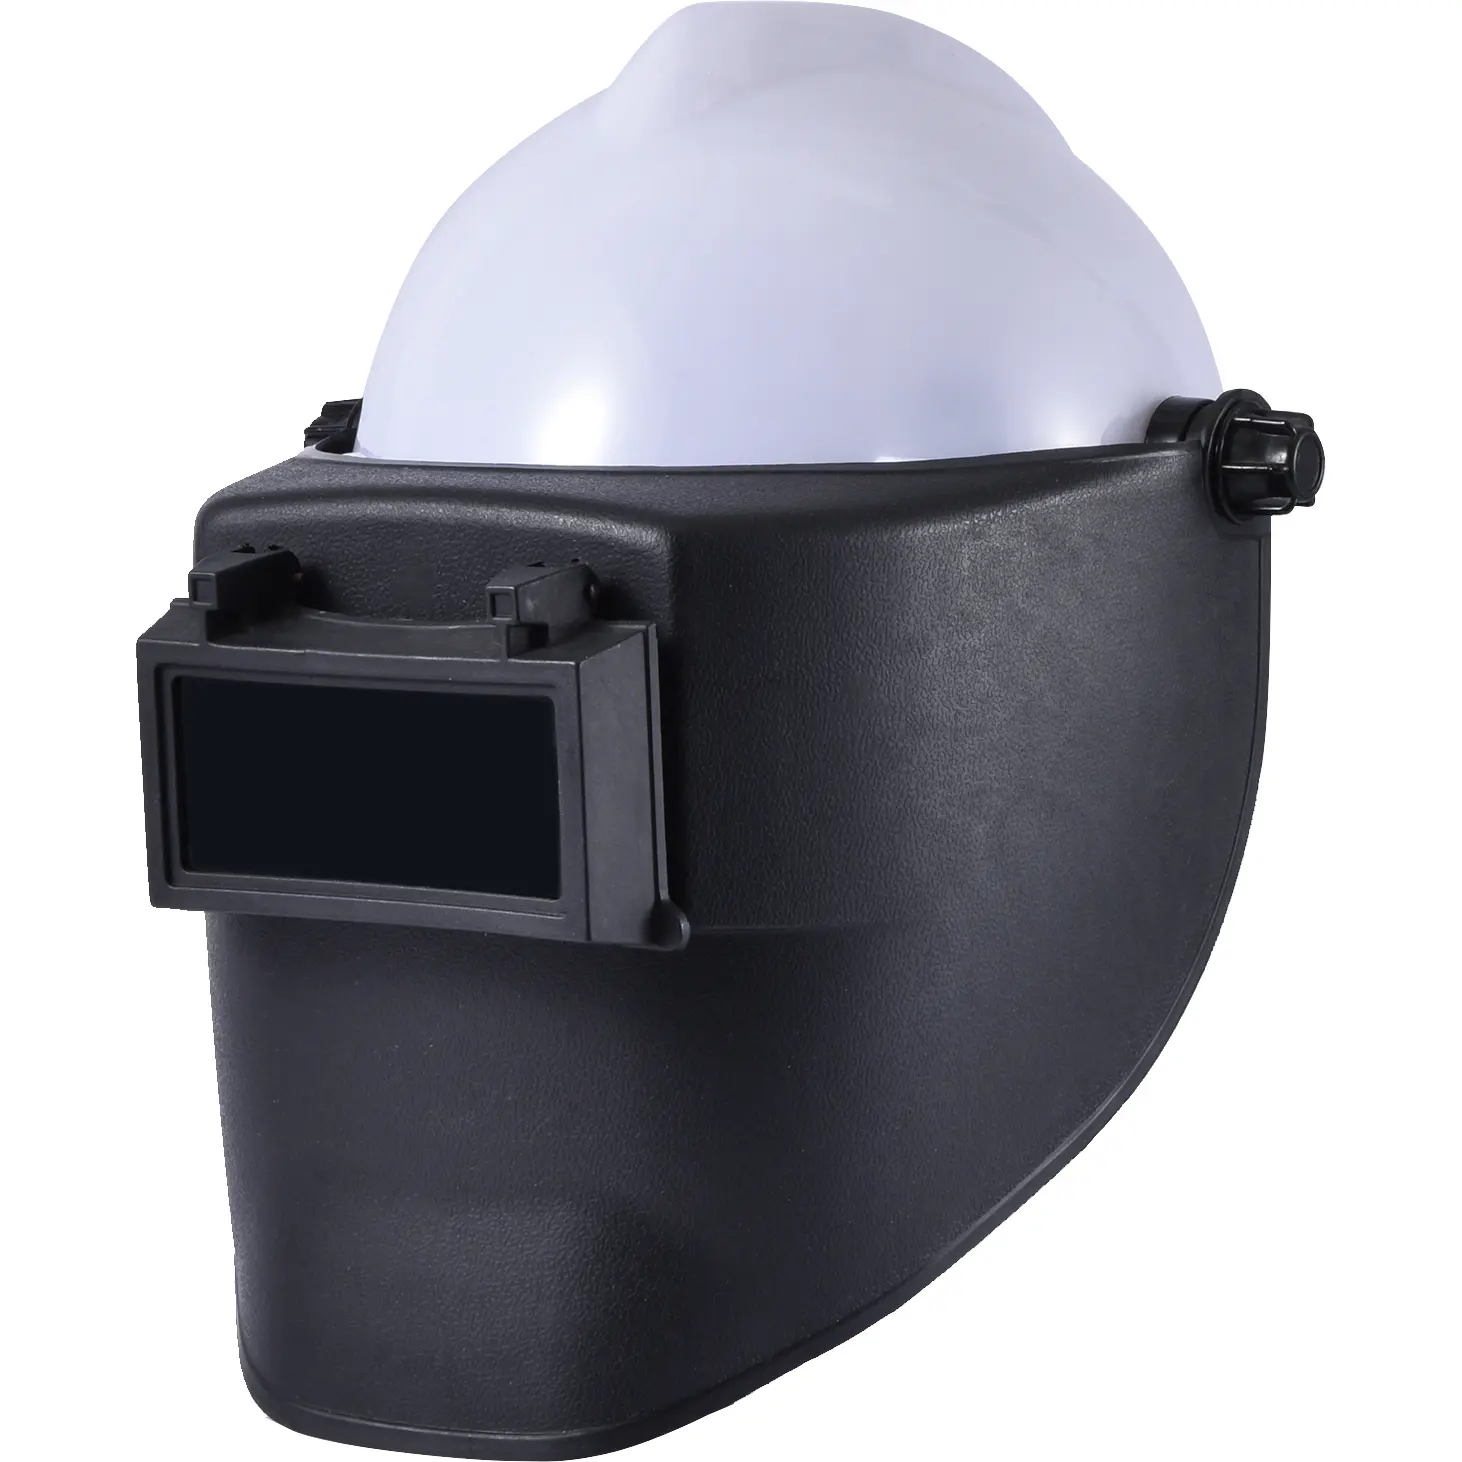 YS-KD8013 PP HDPE ריתוך קסדת צבע אמיתי עם בטיחות קסדת ערכת אדפטיבית אוטומטי מחשיך ראש רכוב ריתוך קסדה